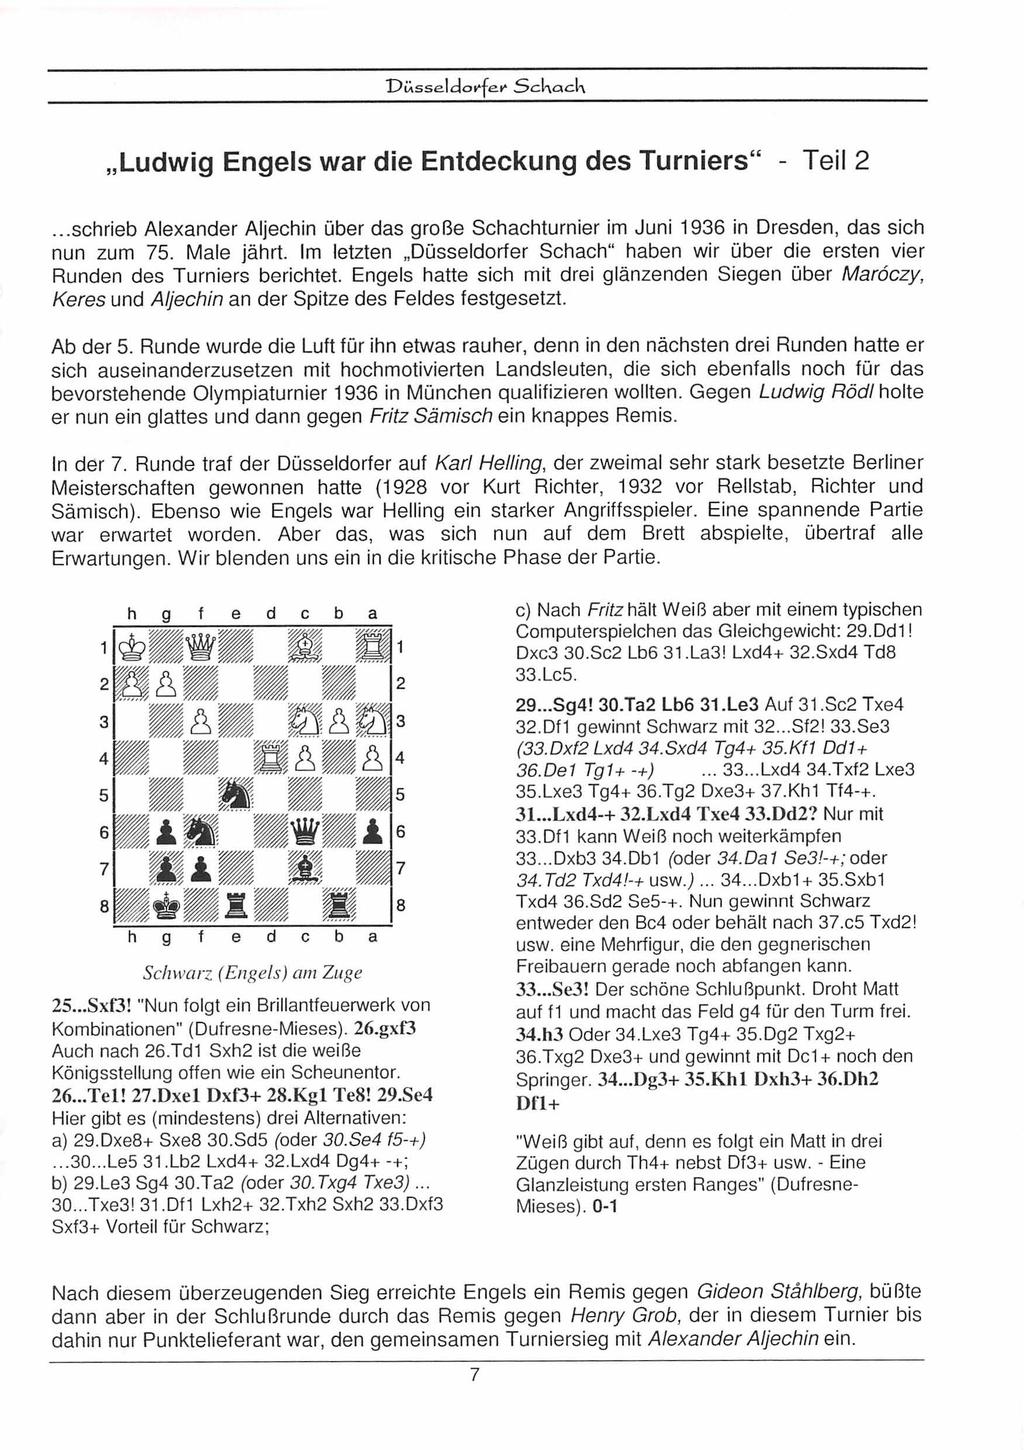 ,,Ludwig Engels war die Entdeckung des Turniers" - Teil 2... schrieb Alexander Aljechin über das große Schachturnier im Juni 1936 in Dresden, das sich nun zum 75. Male jährt. Im letzten.